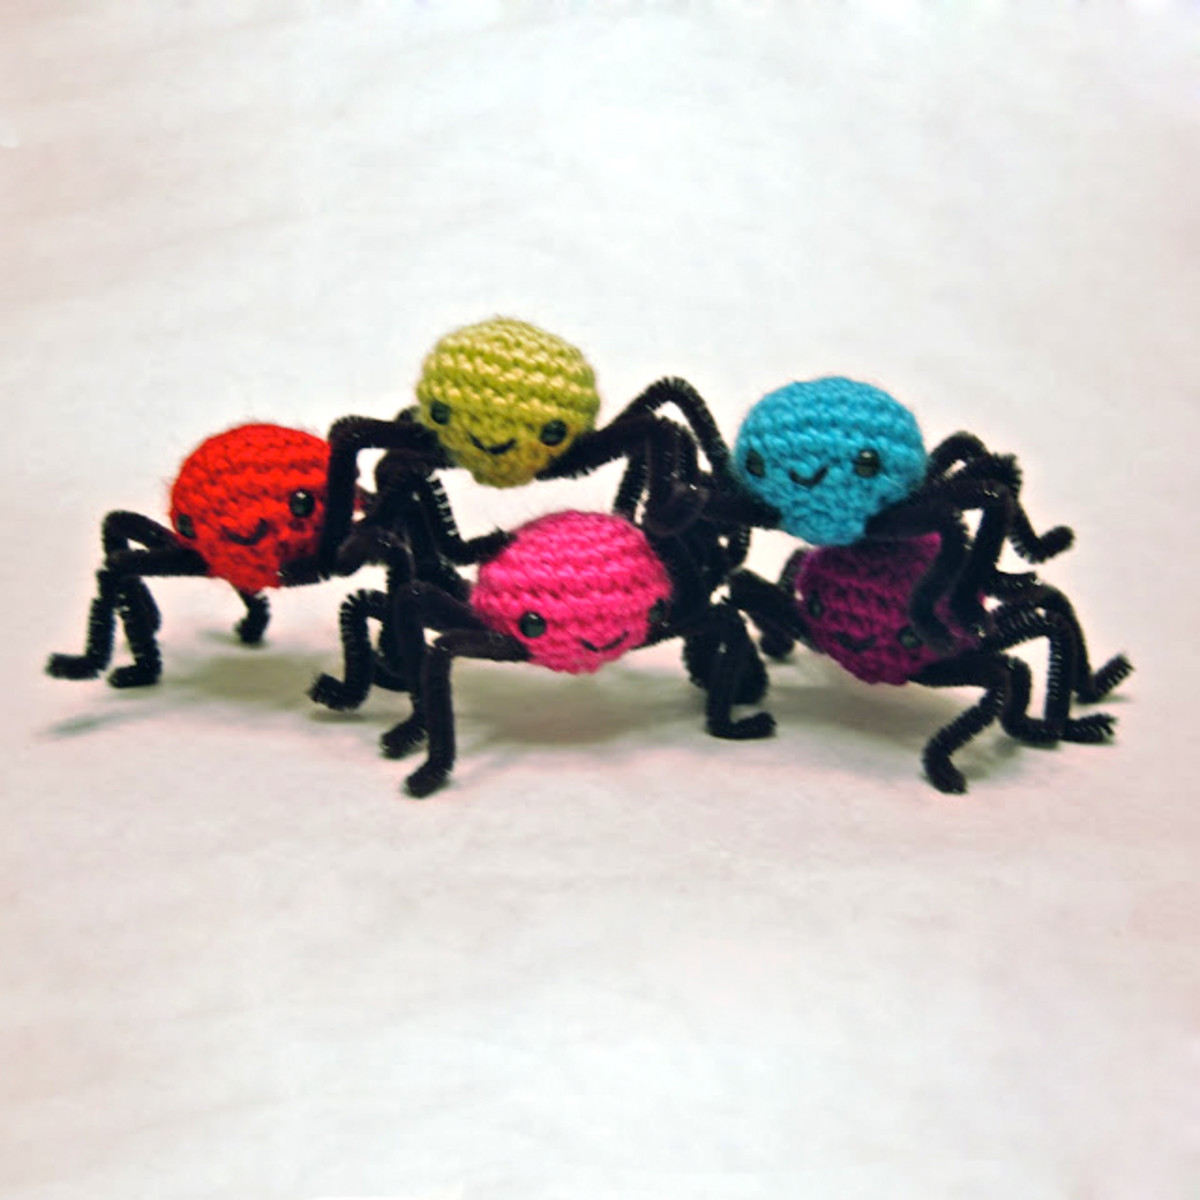 free-halloween-spider-crochet-patterns